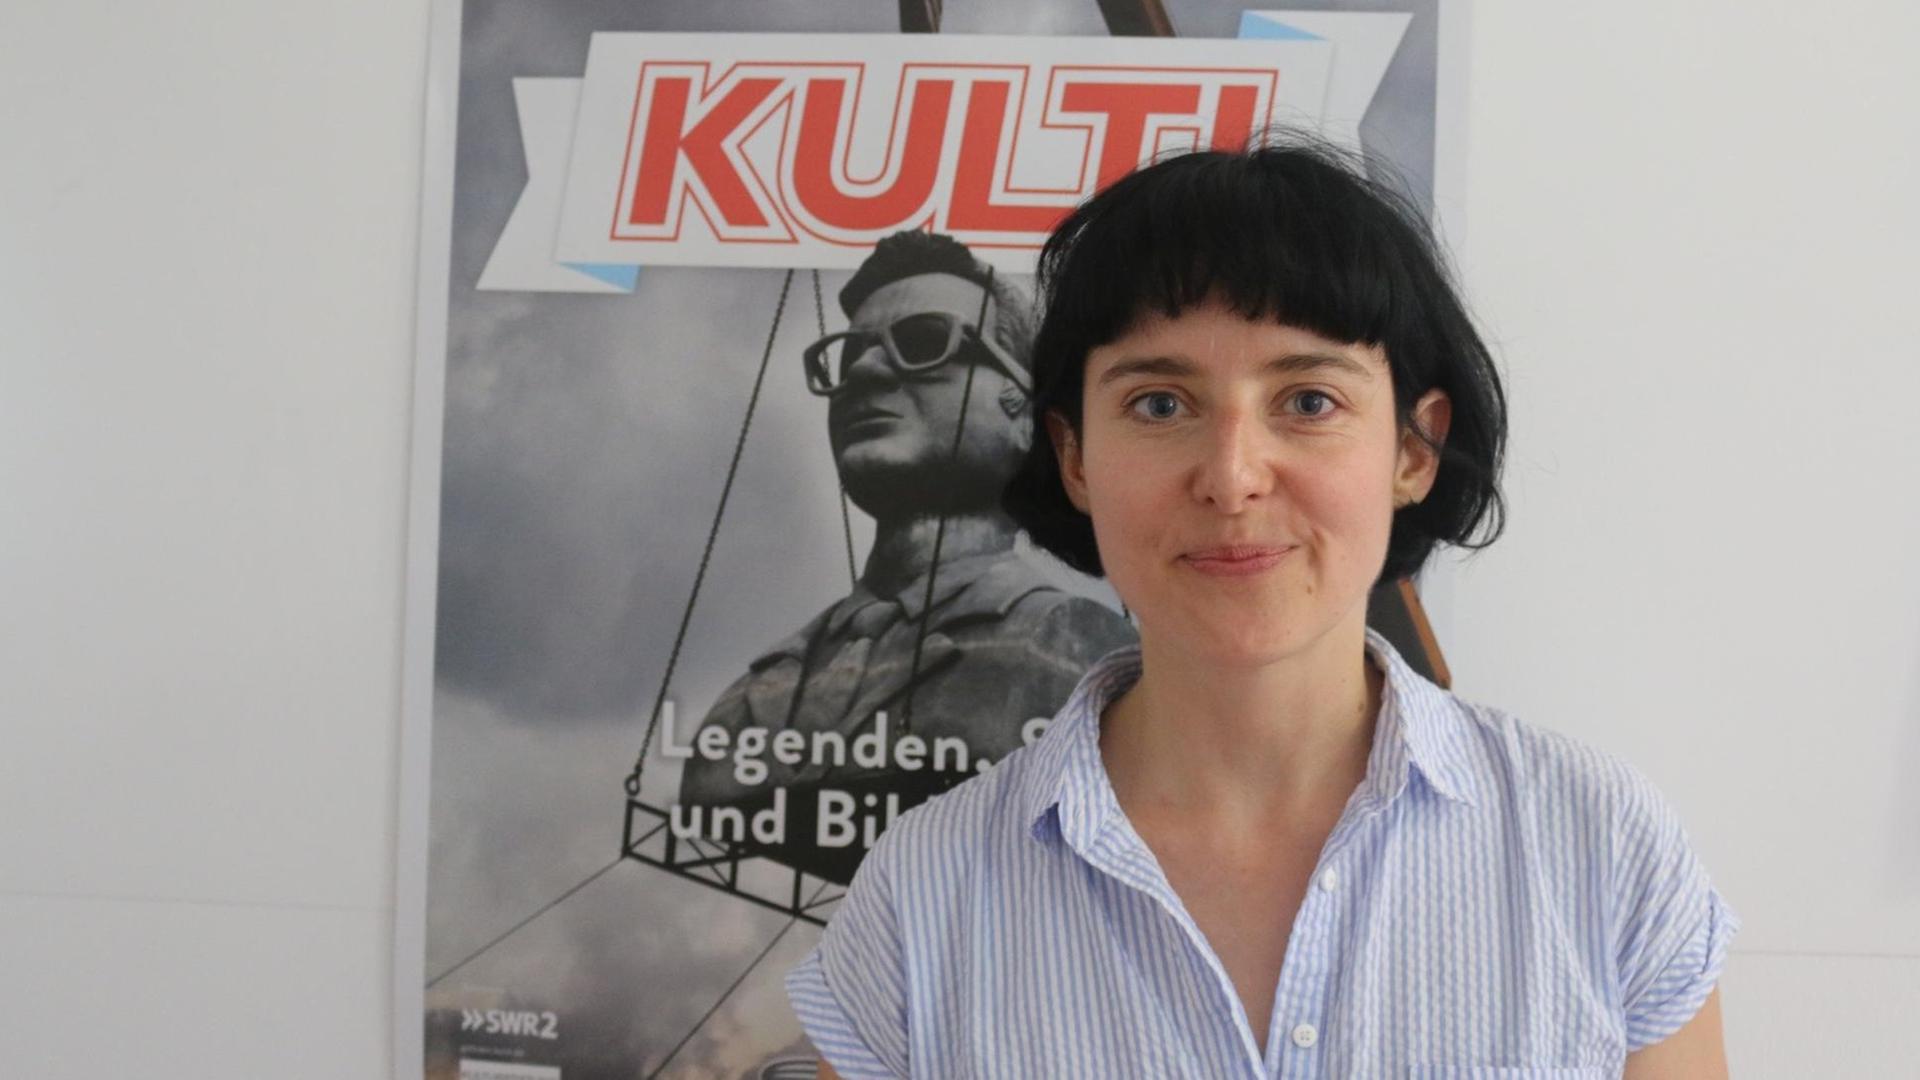 Ina Neddermeyer, Kuratorin der Ausstellung "Kult! Legenden, Stars und Bildikonen" des Zeppelin Museums Friedrichshafen.